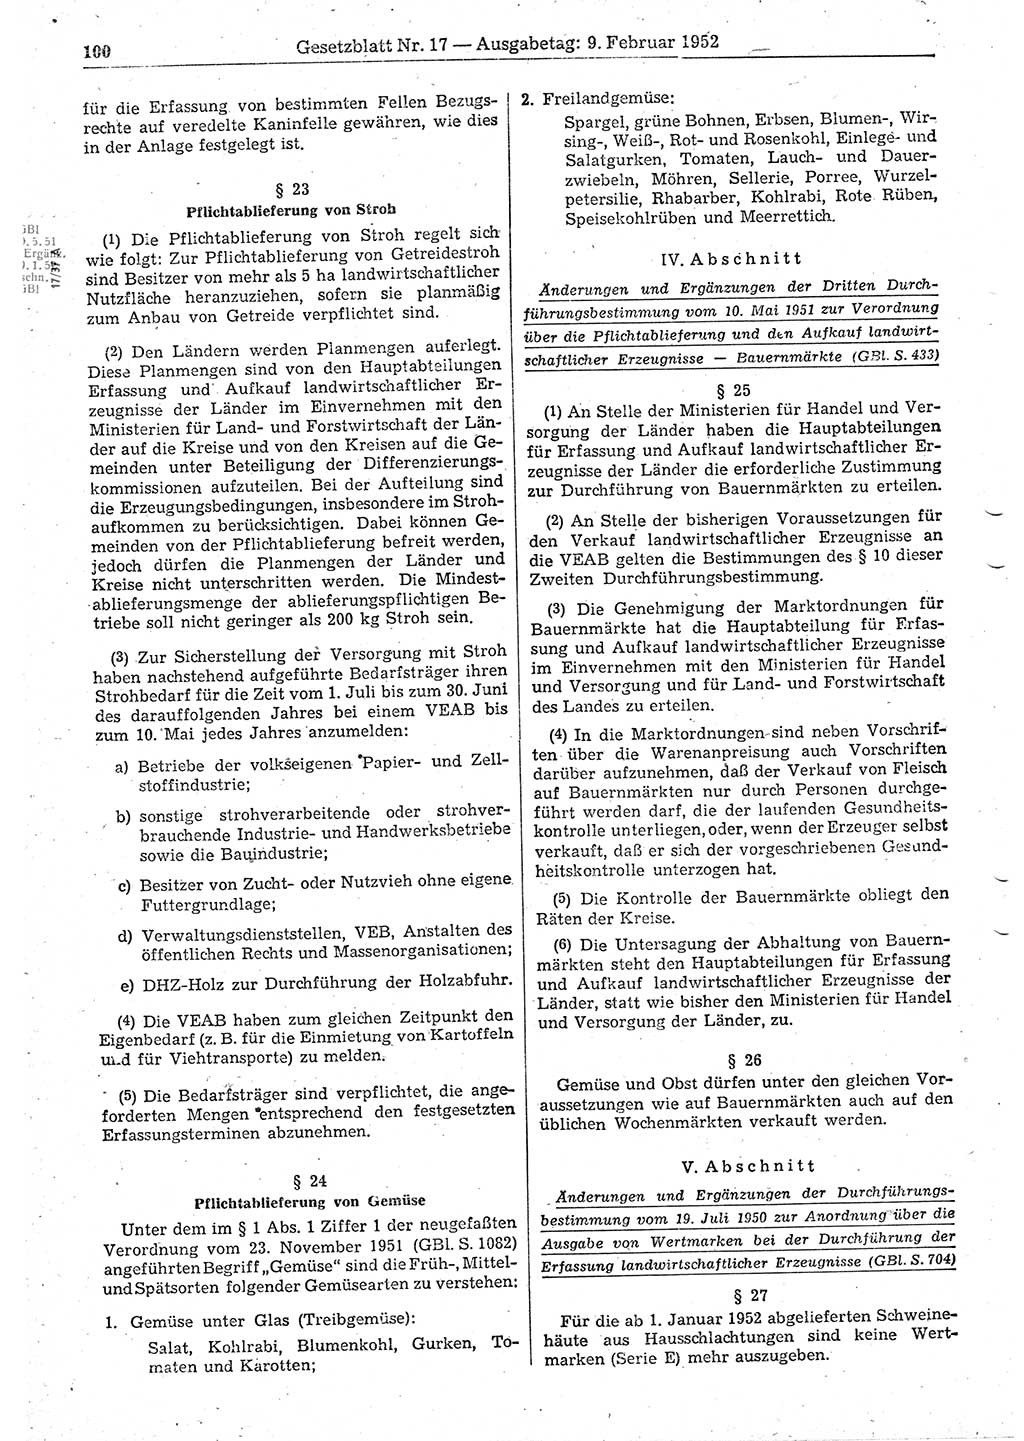 Gesetzblatt (GBl.) der Deutschen Demokratischen Republik (DDR) 1952, Seite 100 (GBl. DDR 1952, S. 100)